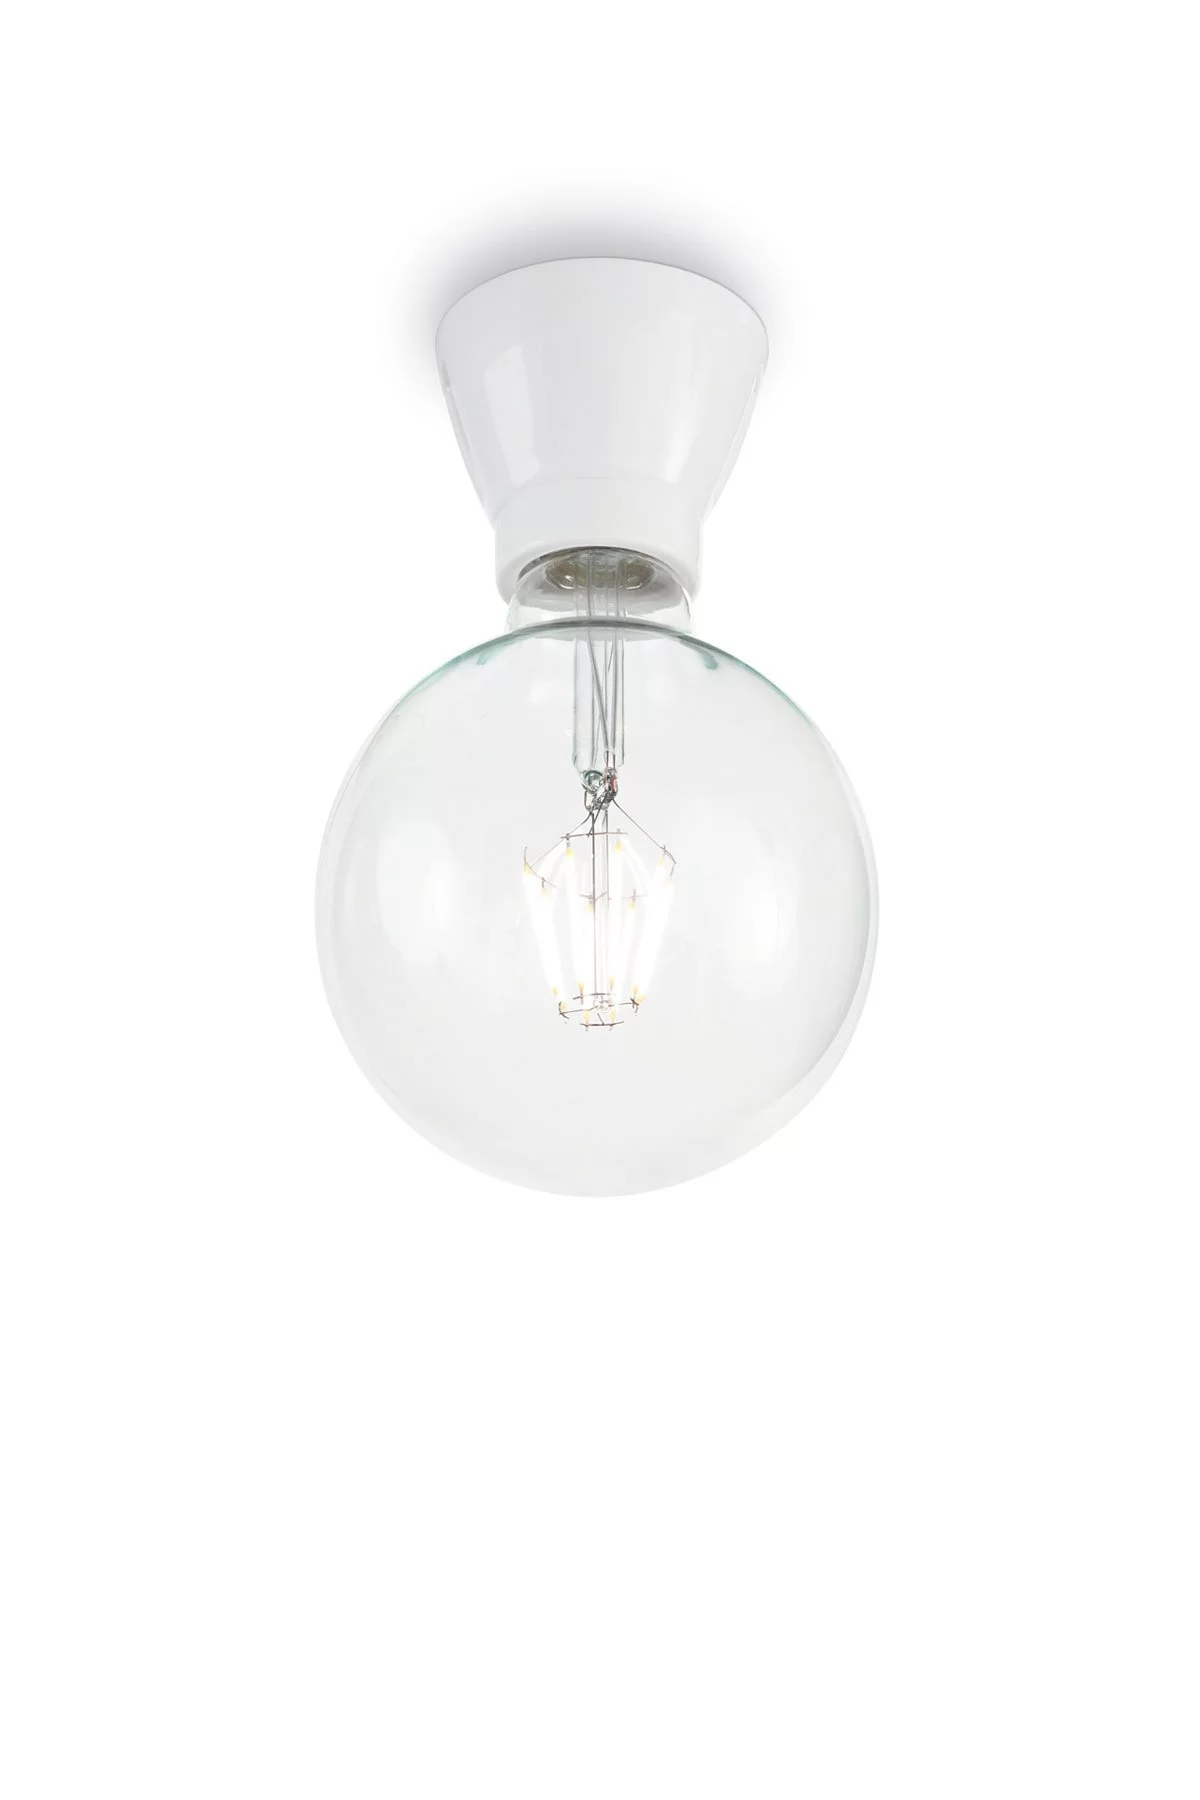   
                        Точечный светильник IDEAL LUX  (Италия) 13243    
                         в стиле Лофт, Скандинавский.  
                        Тип источника света: светодиодная лампа, сменная.                         Форма: Круг.                                                                          фото 1